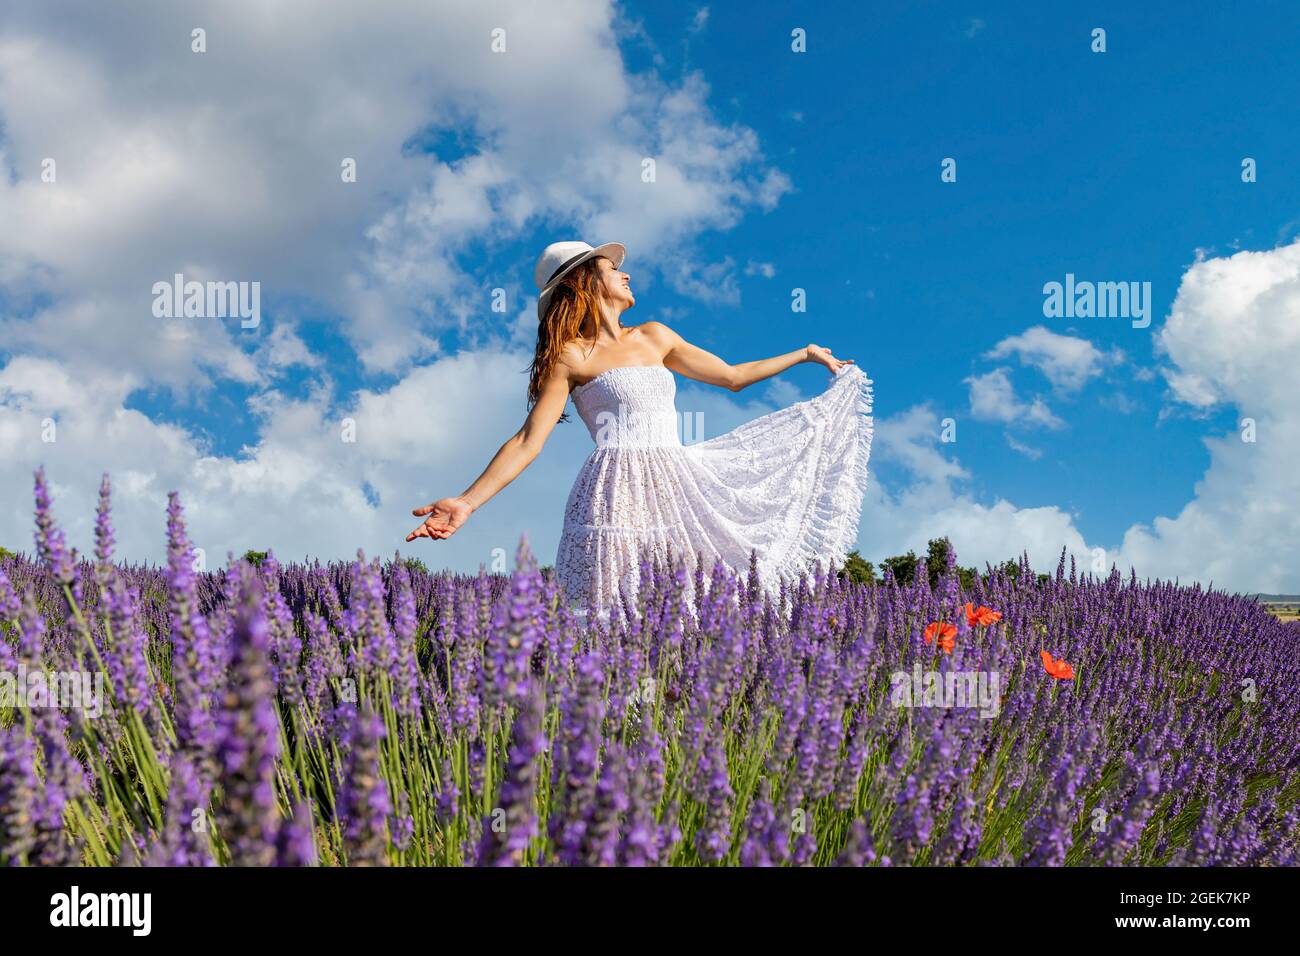 Junge Frau mit langen braunen Haaren, die in einem Lavendelfeld singt und tanzt. Konzept von Glück und Wohlbefinden in der Natur. Stockfoto